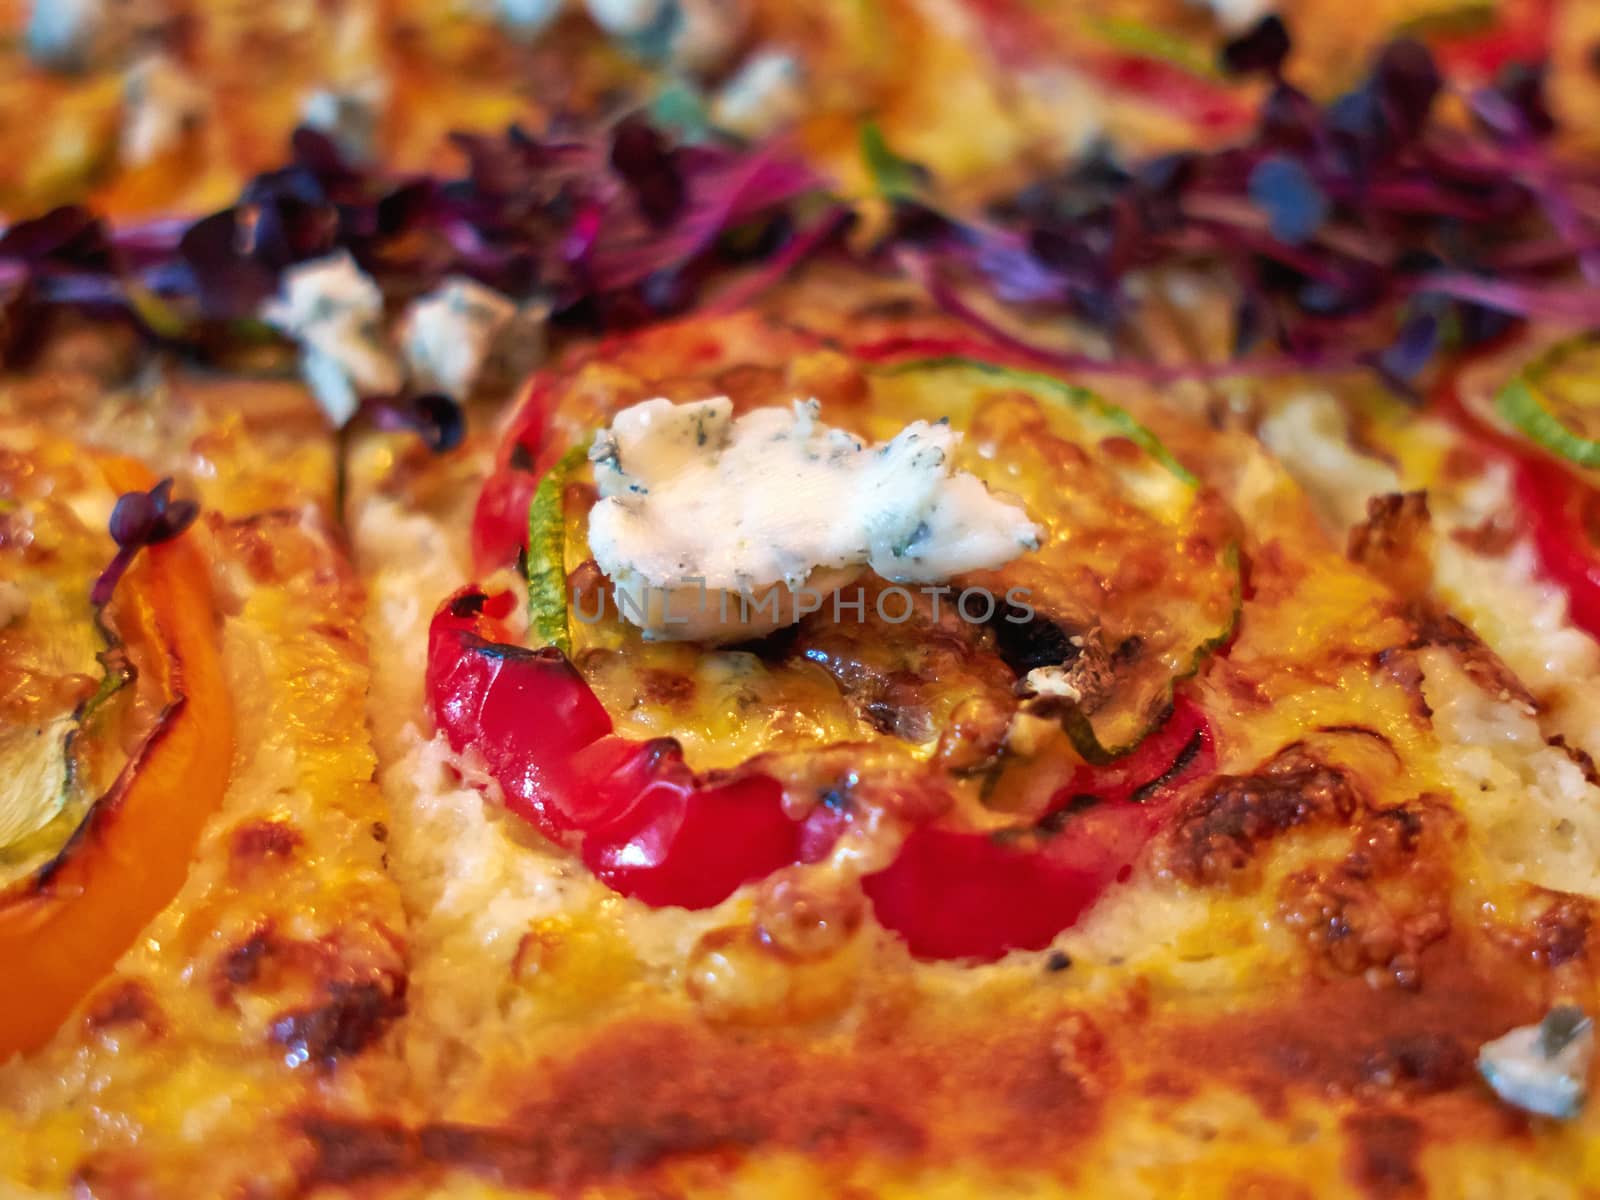 Tasty Italian vegetarian pizza by Ronyzmbow